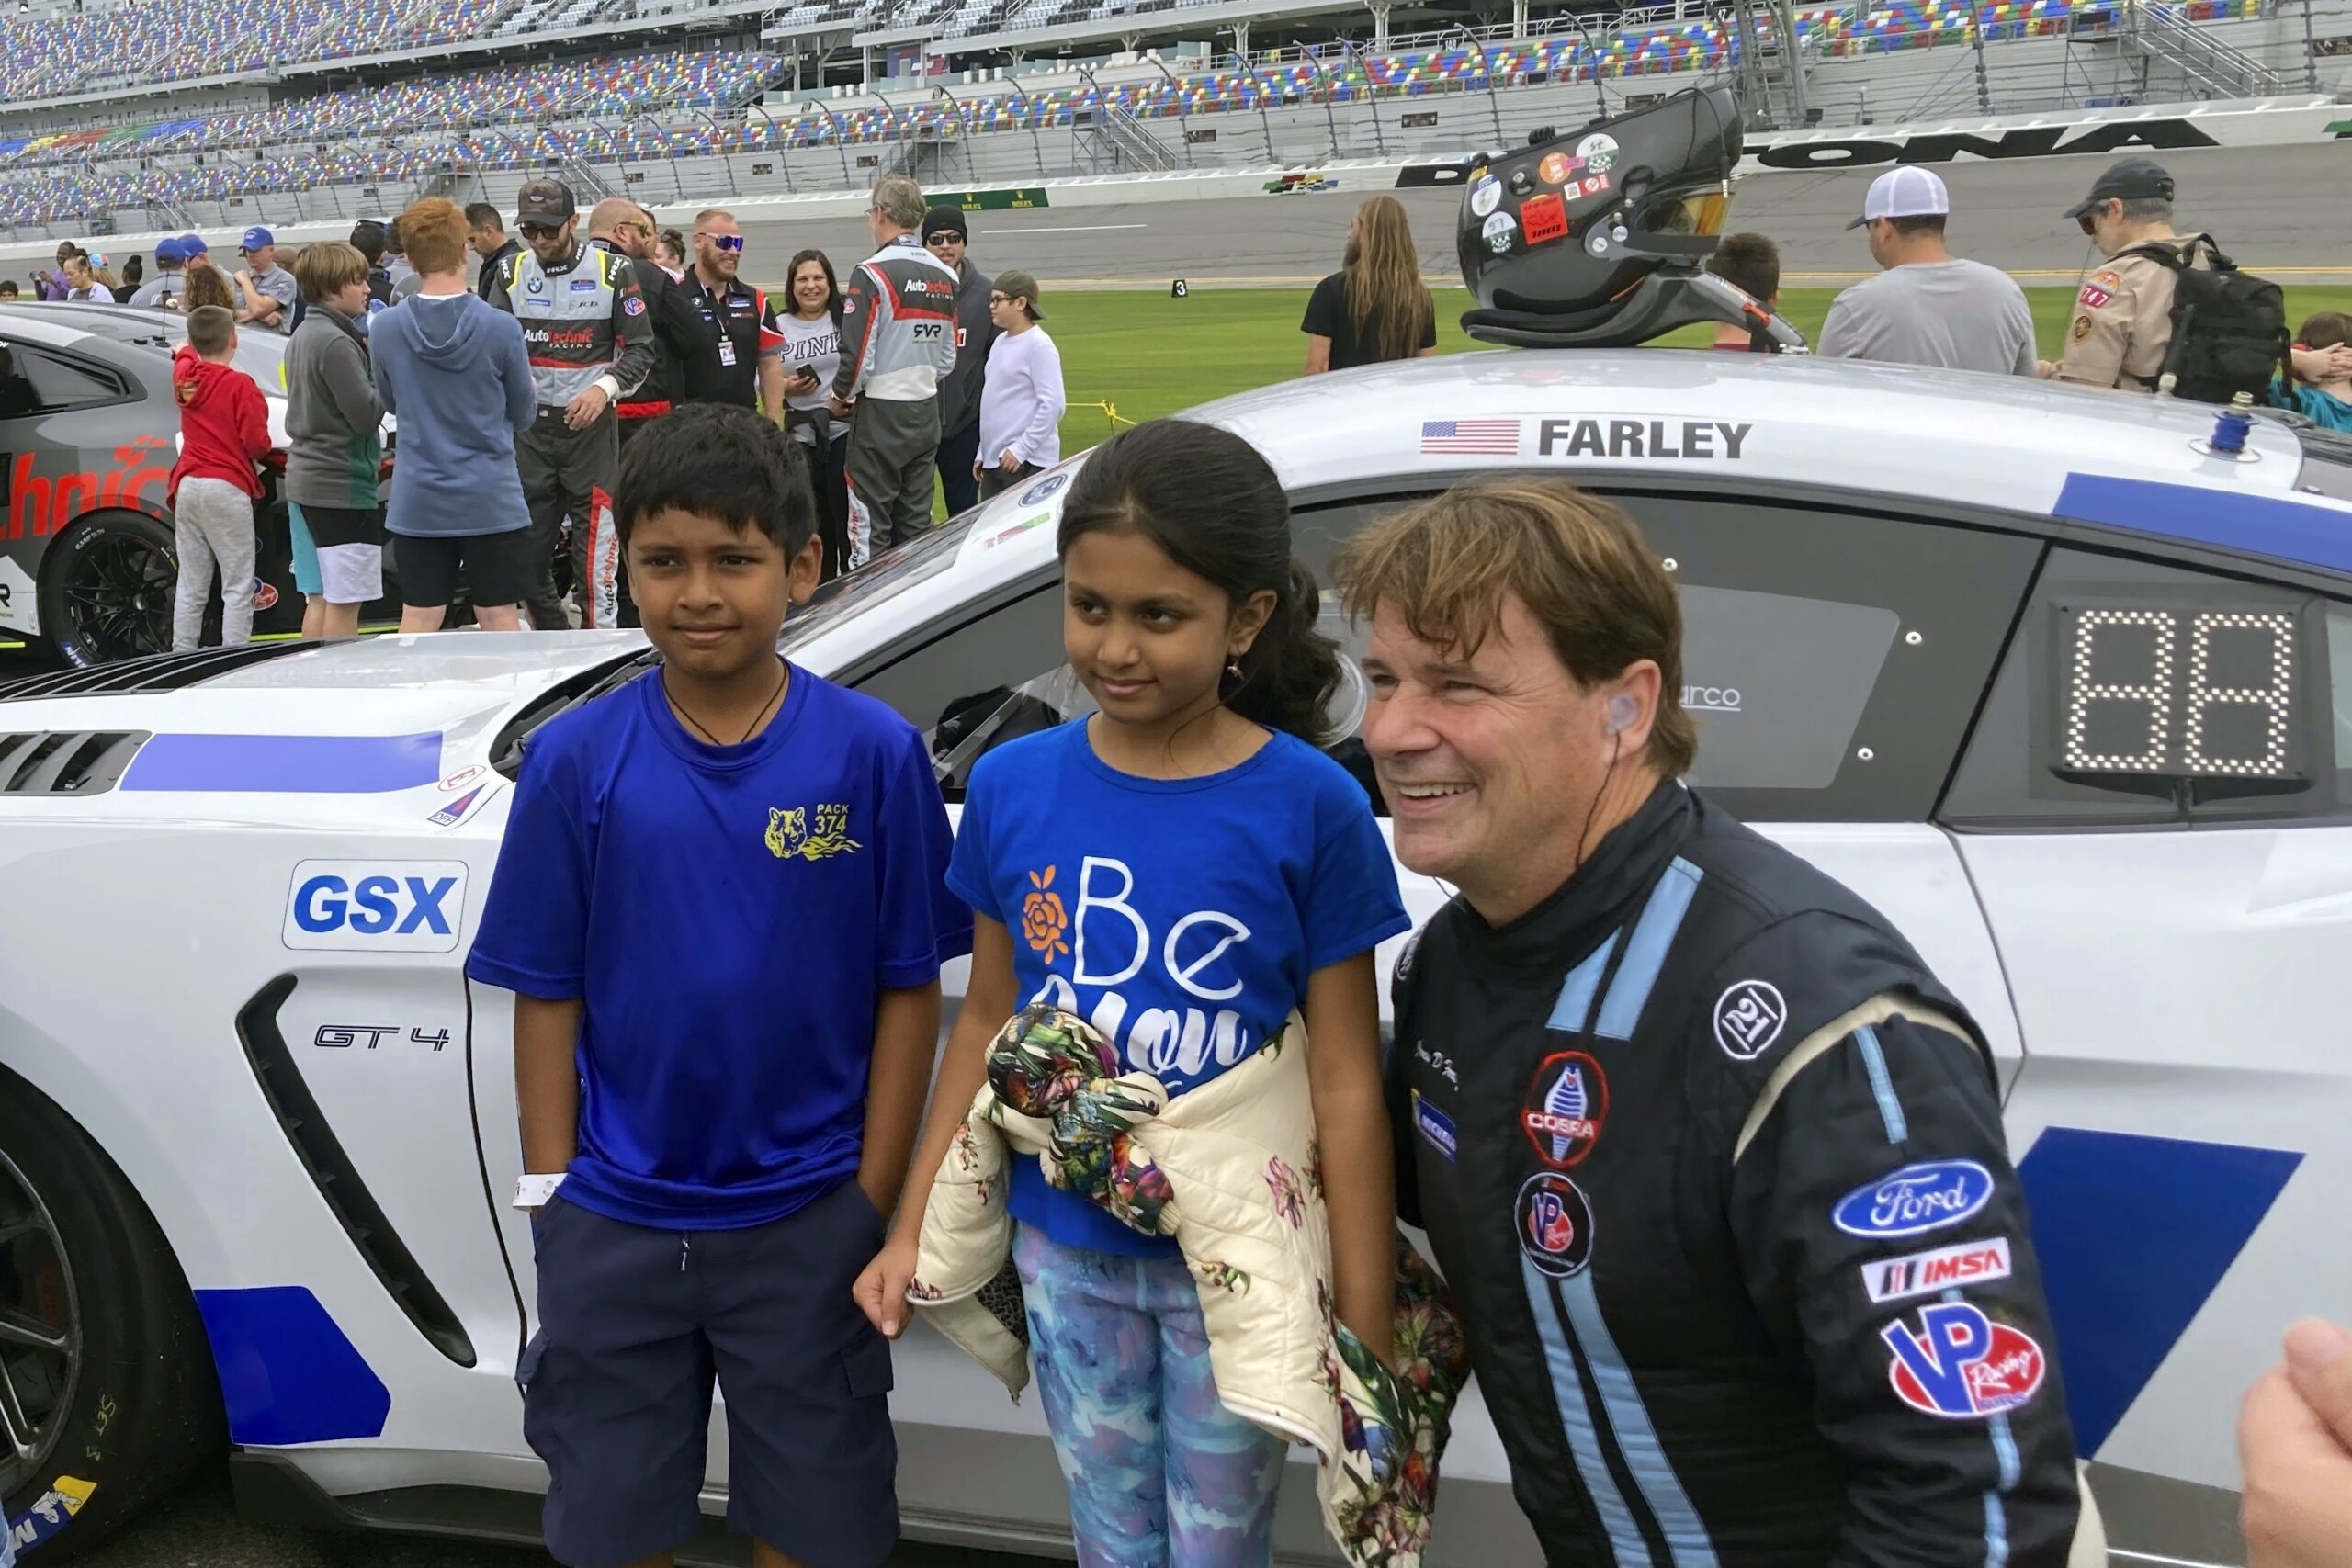 Ford CEO Farley makes professional racing debut at Daytona